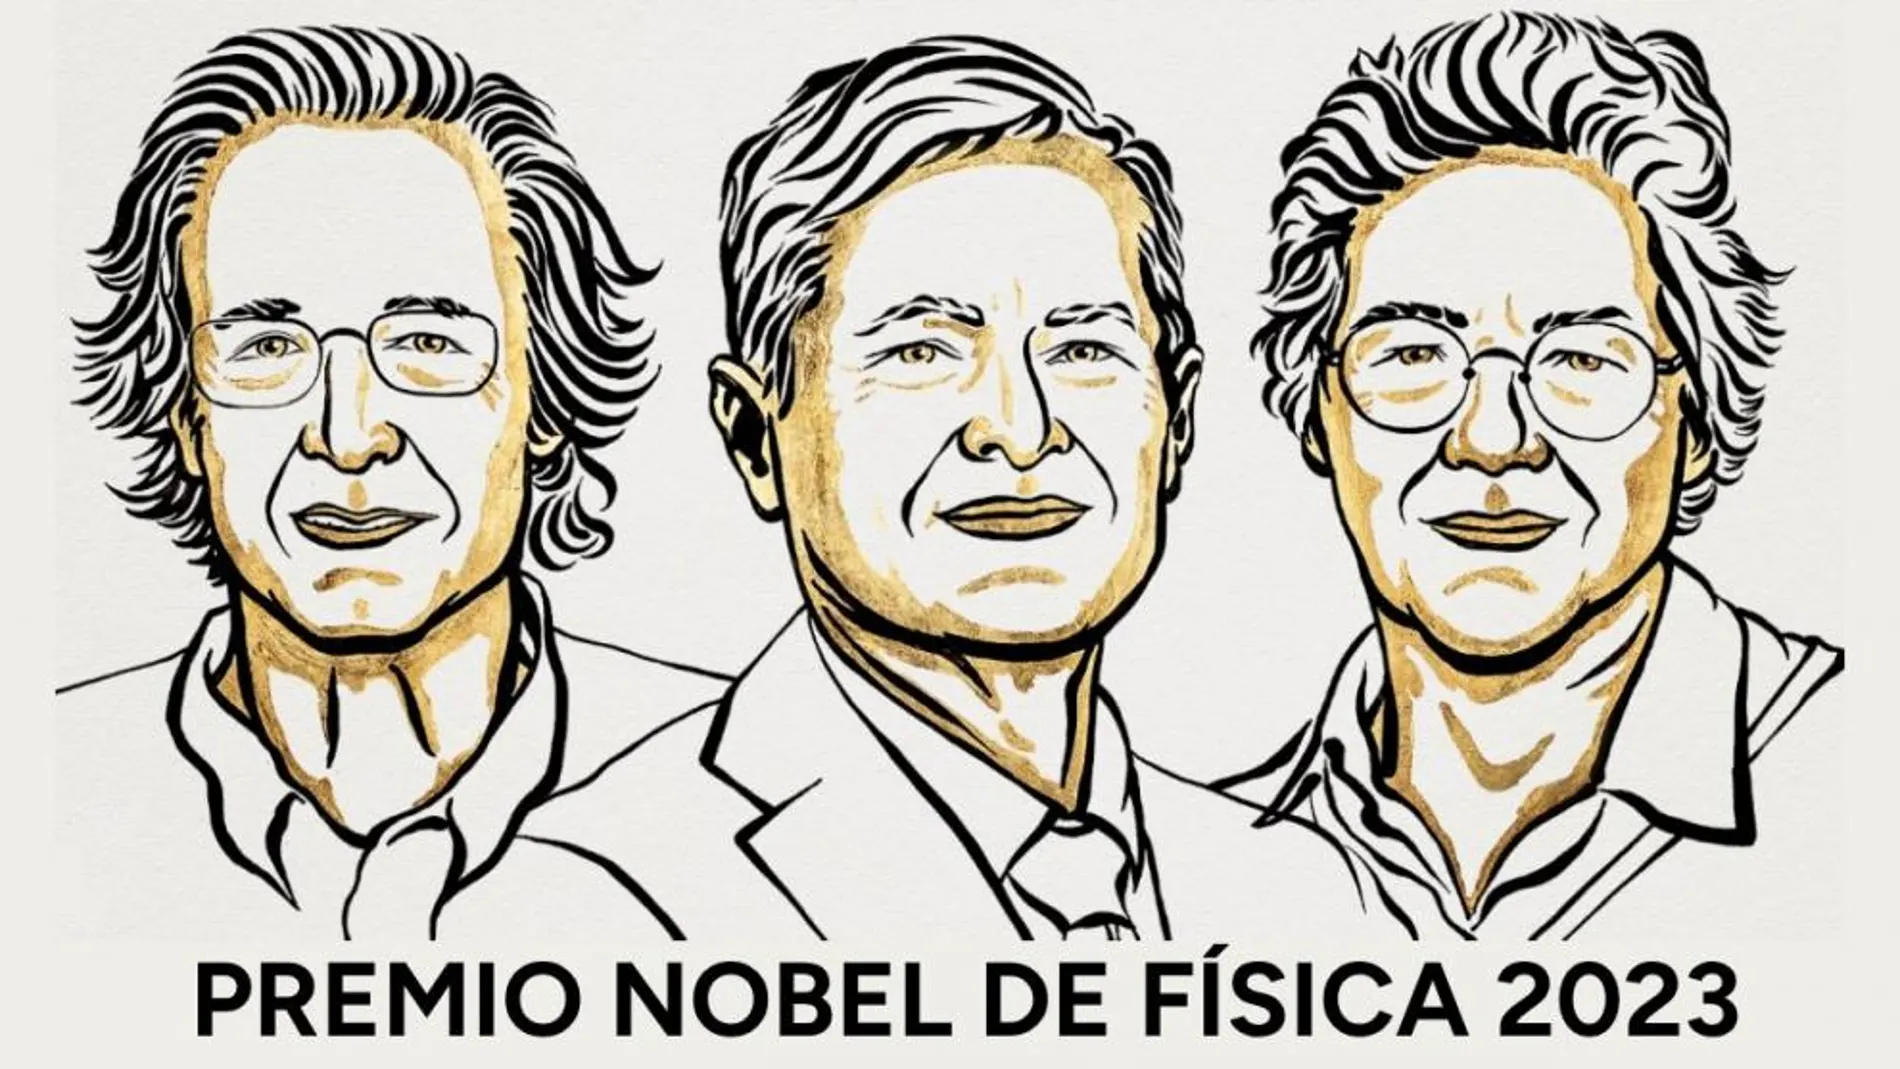 Los ganadores del Premio Nobel de Física 2023. Los ganadores del Premio Nobel de Física 2023: Agostini, Krausz y L’Huillier